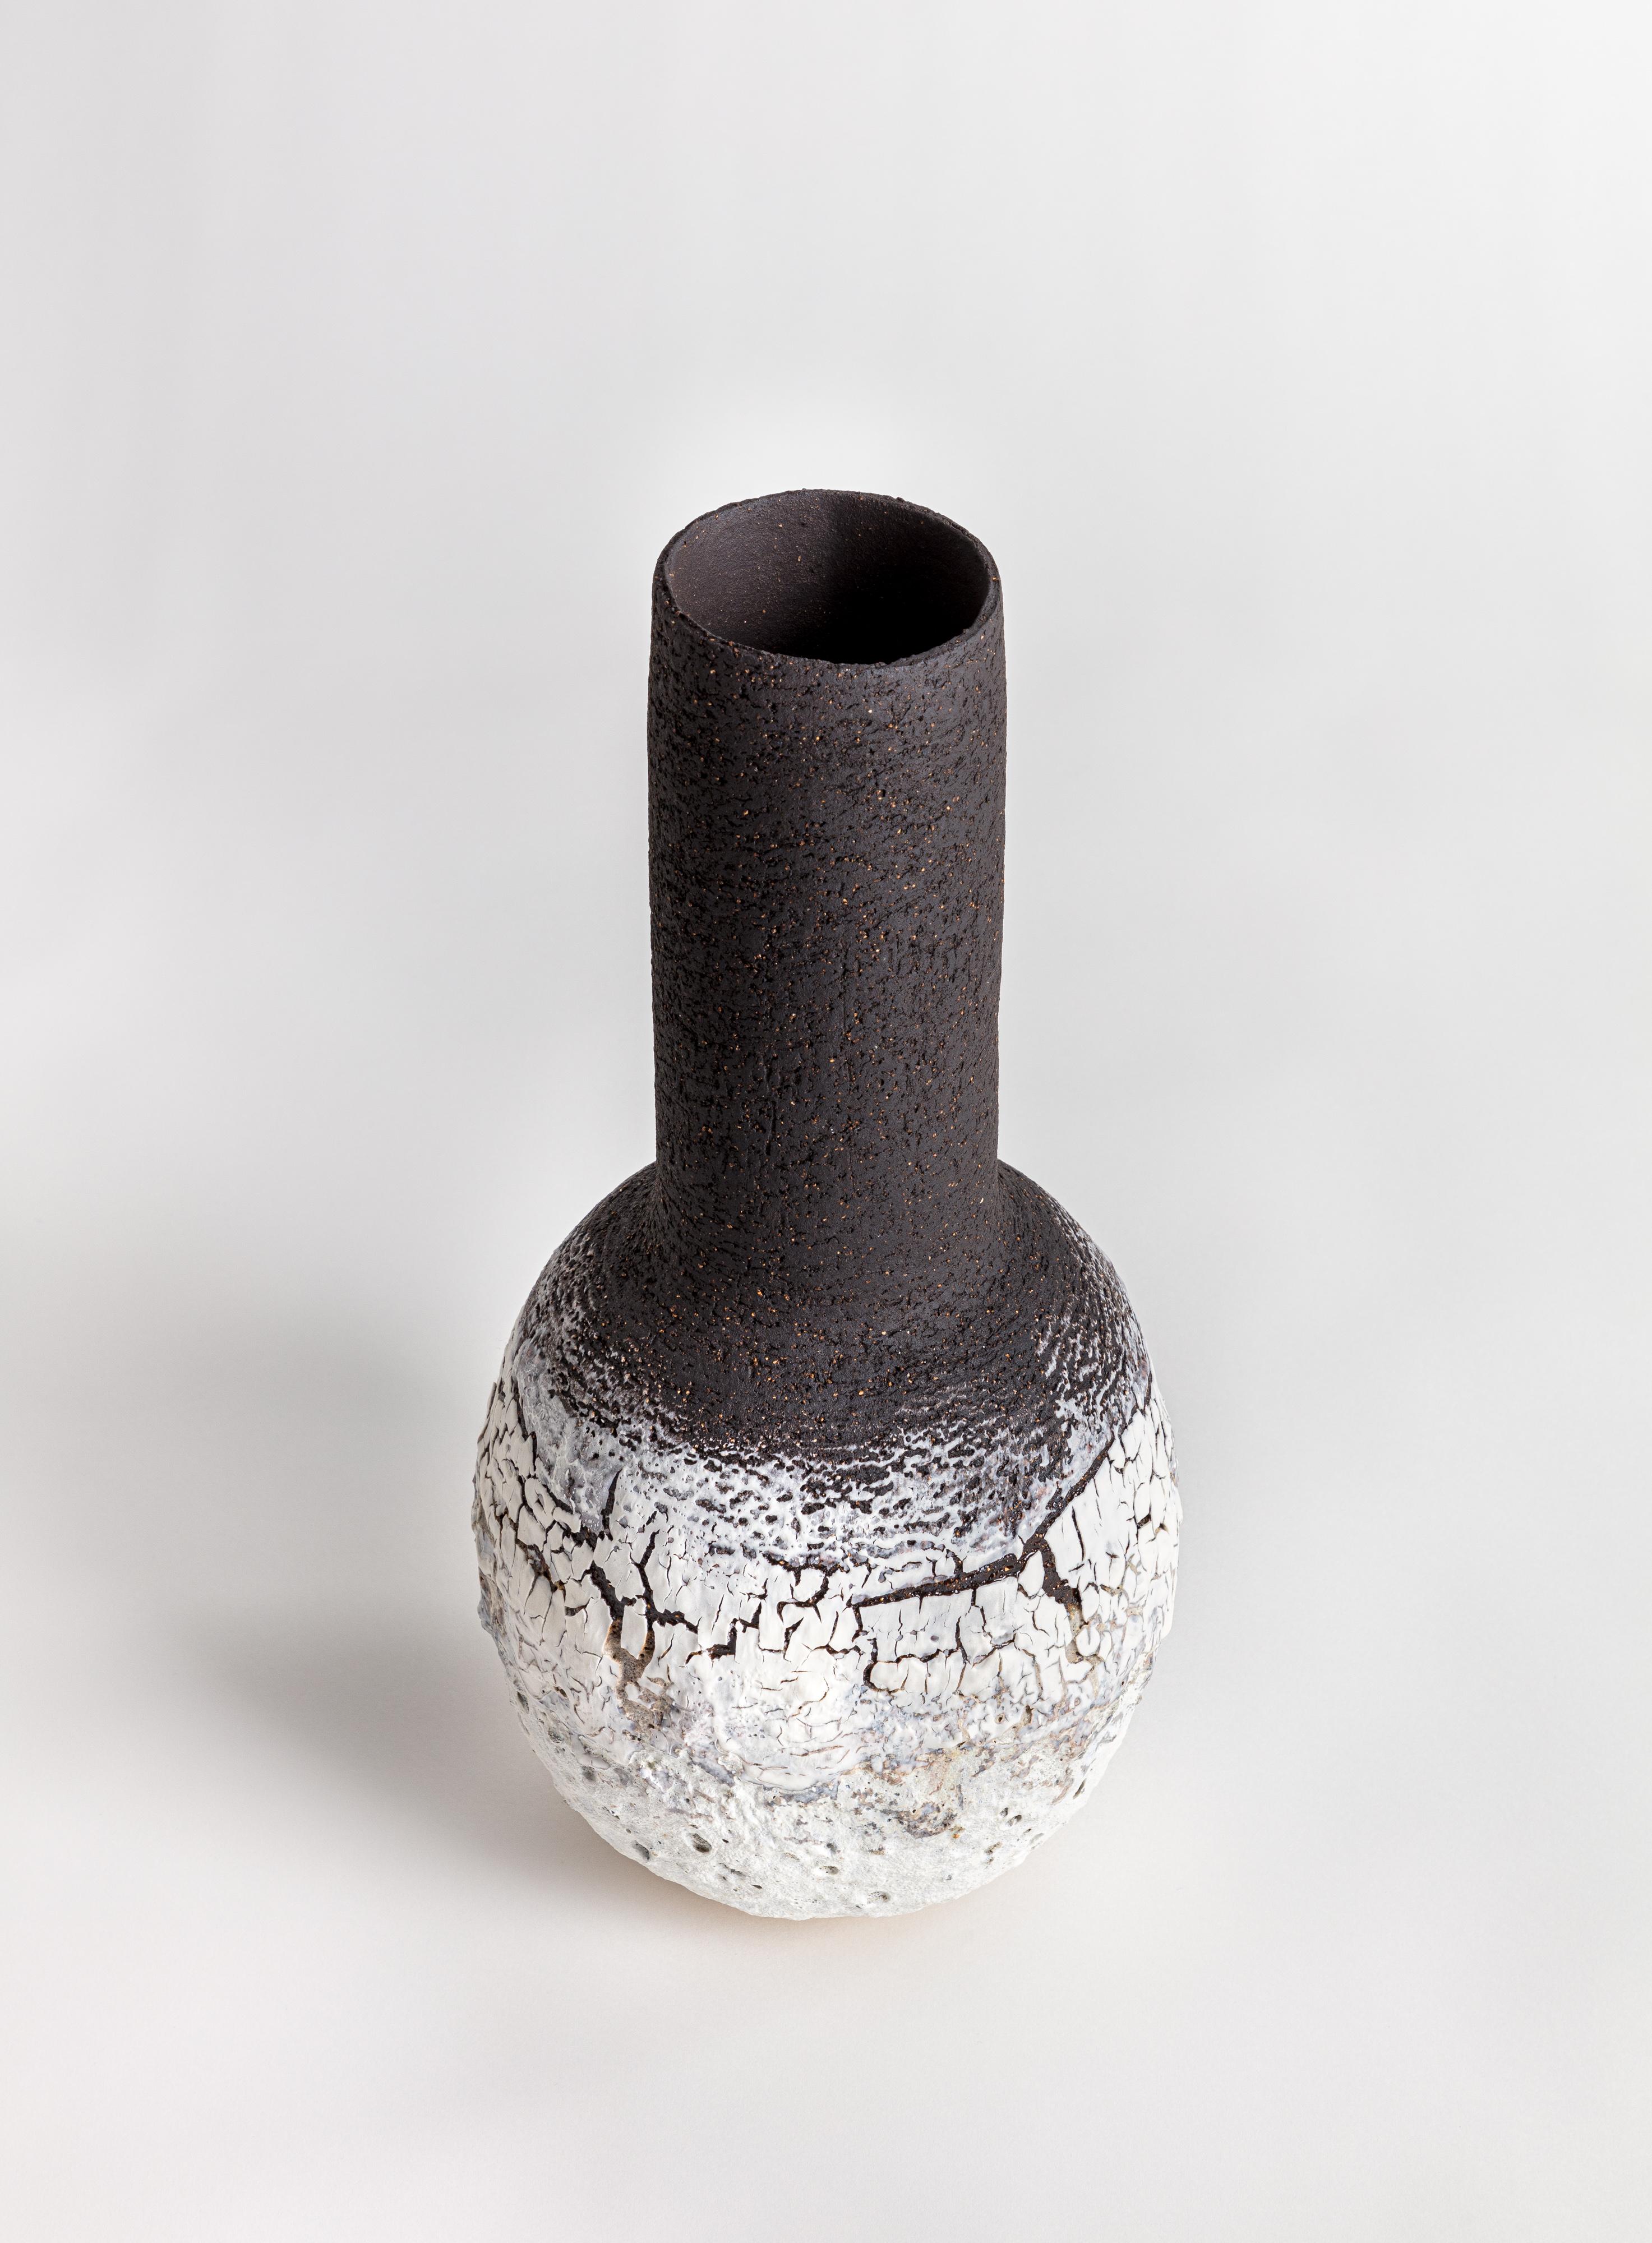 Vase in Flaschenform aus weißem und schwarzem Steinzeugton mit Porzellanglasur mit schwerer vulkanischer Struktur. Es besteht die Möglichkeit, drei verschiedene Farbvarianten in Auftrag zu geben.

Die Arbeiten werden in Handarbeit aus einer